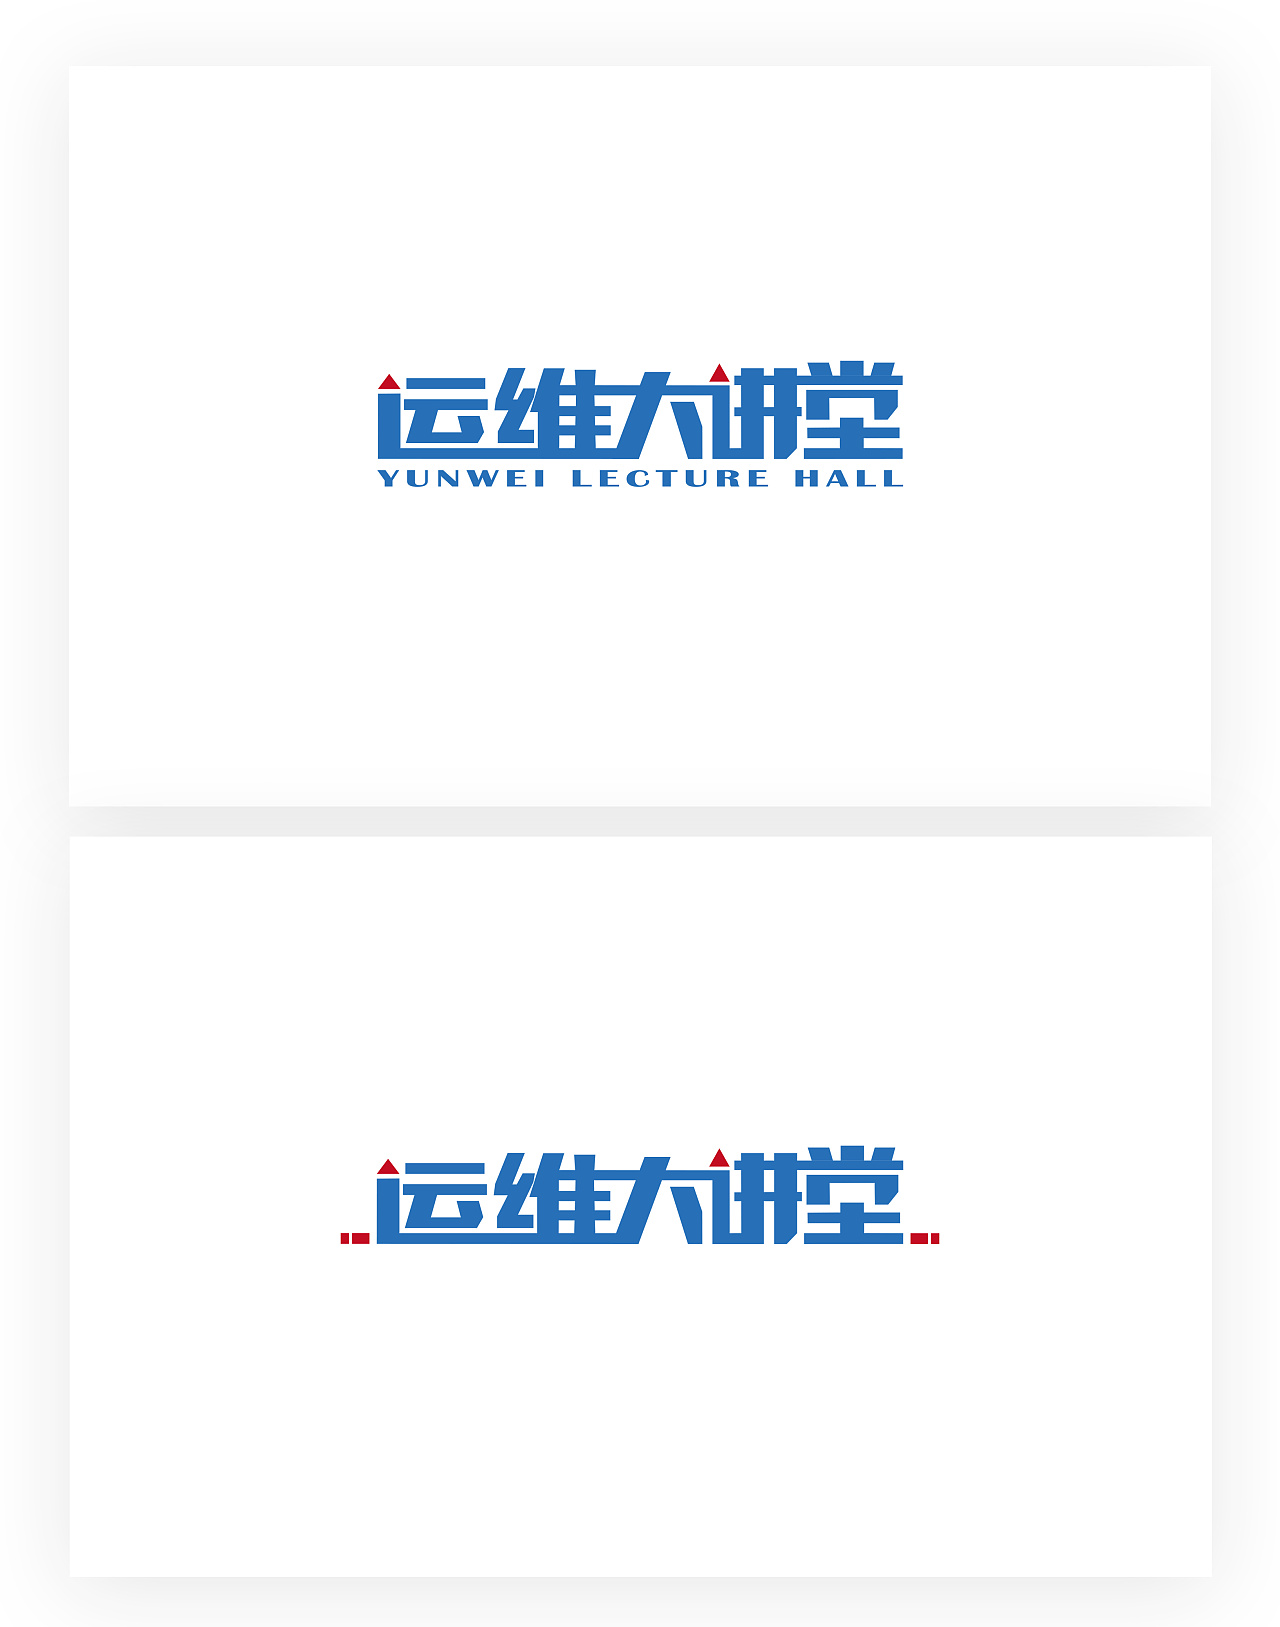 运维大讲堂系列logo